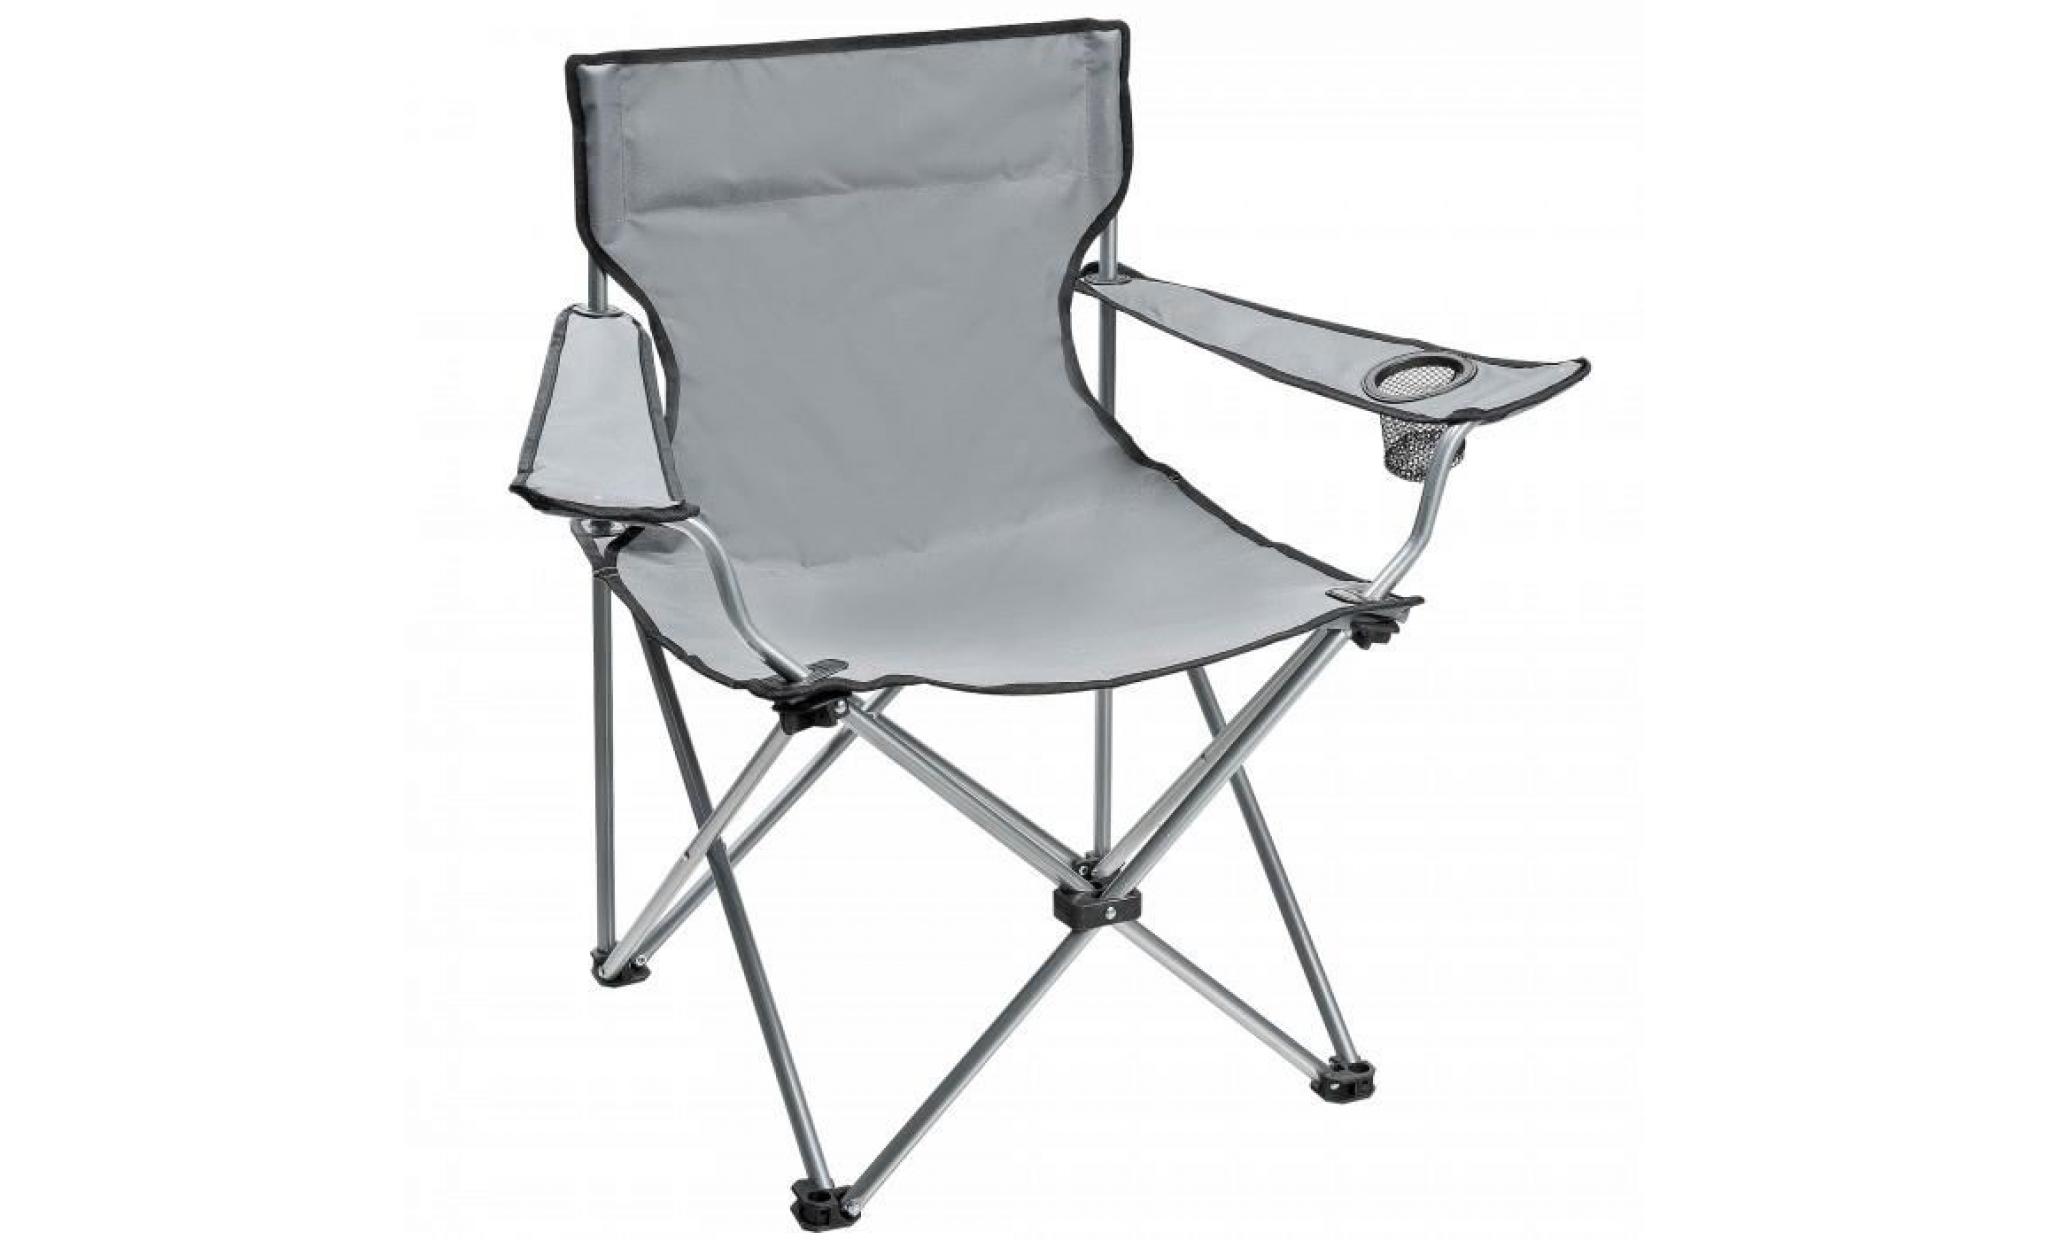 ce fauteuil pliant est tres pratique pour la peche, le camping, la plage et les loisirs.armature acier epoxy, toile pol